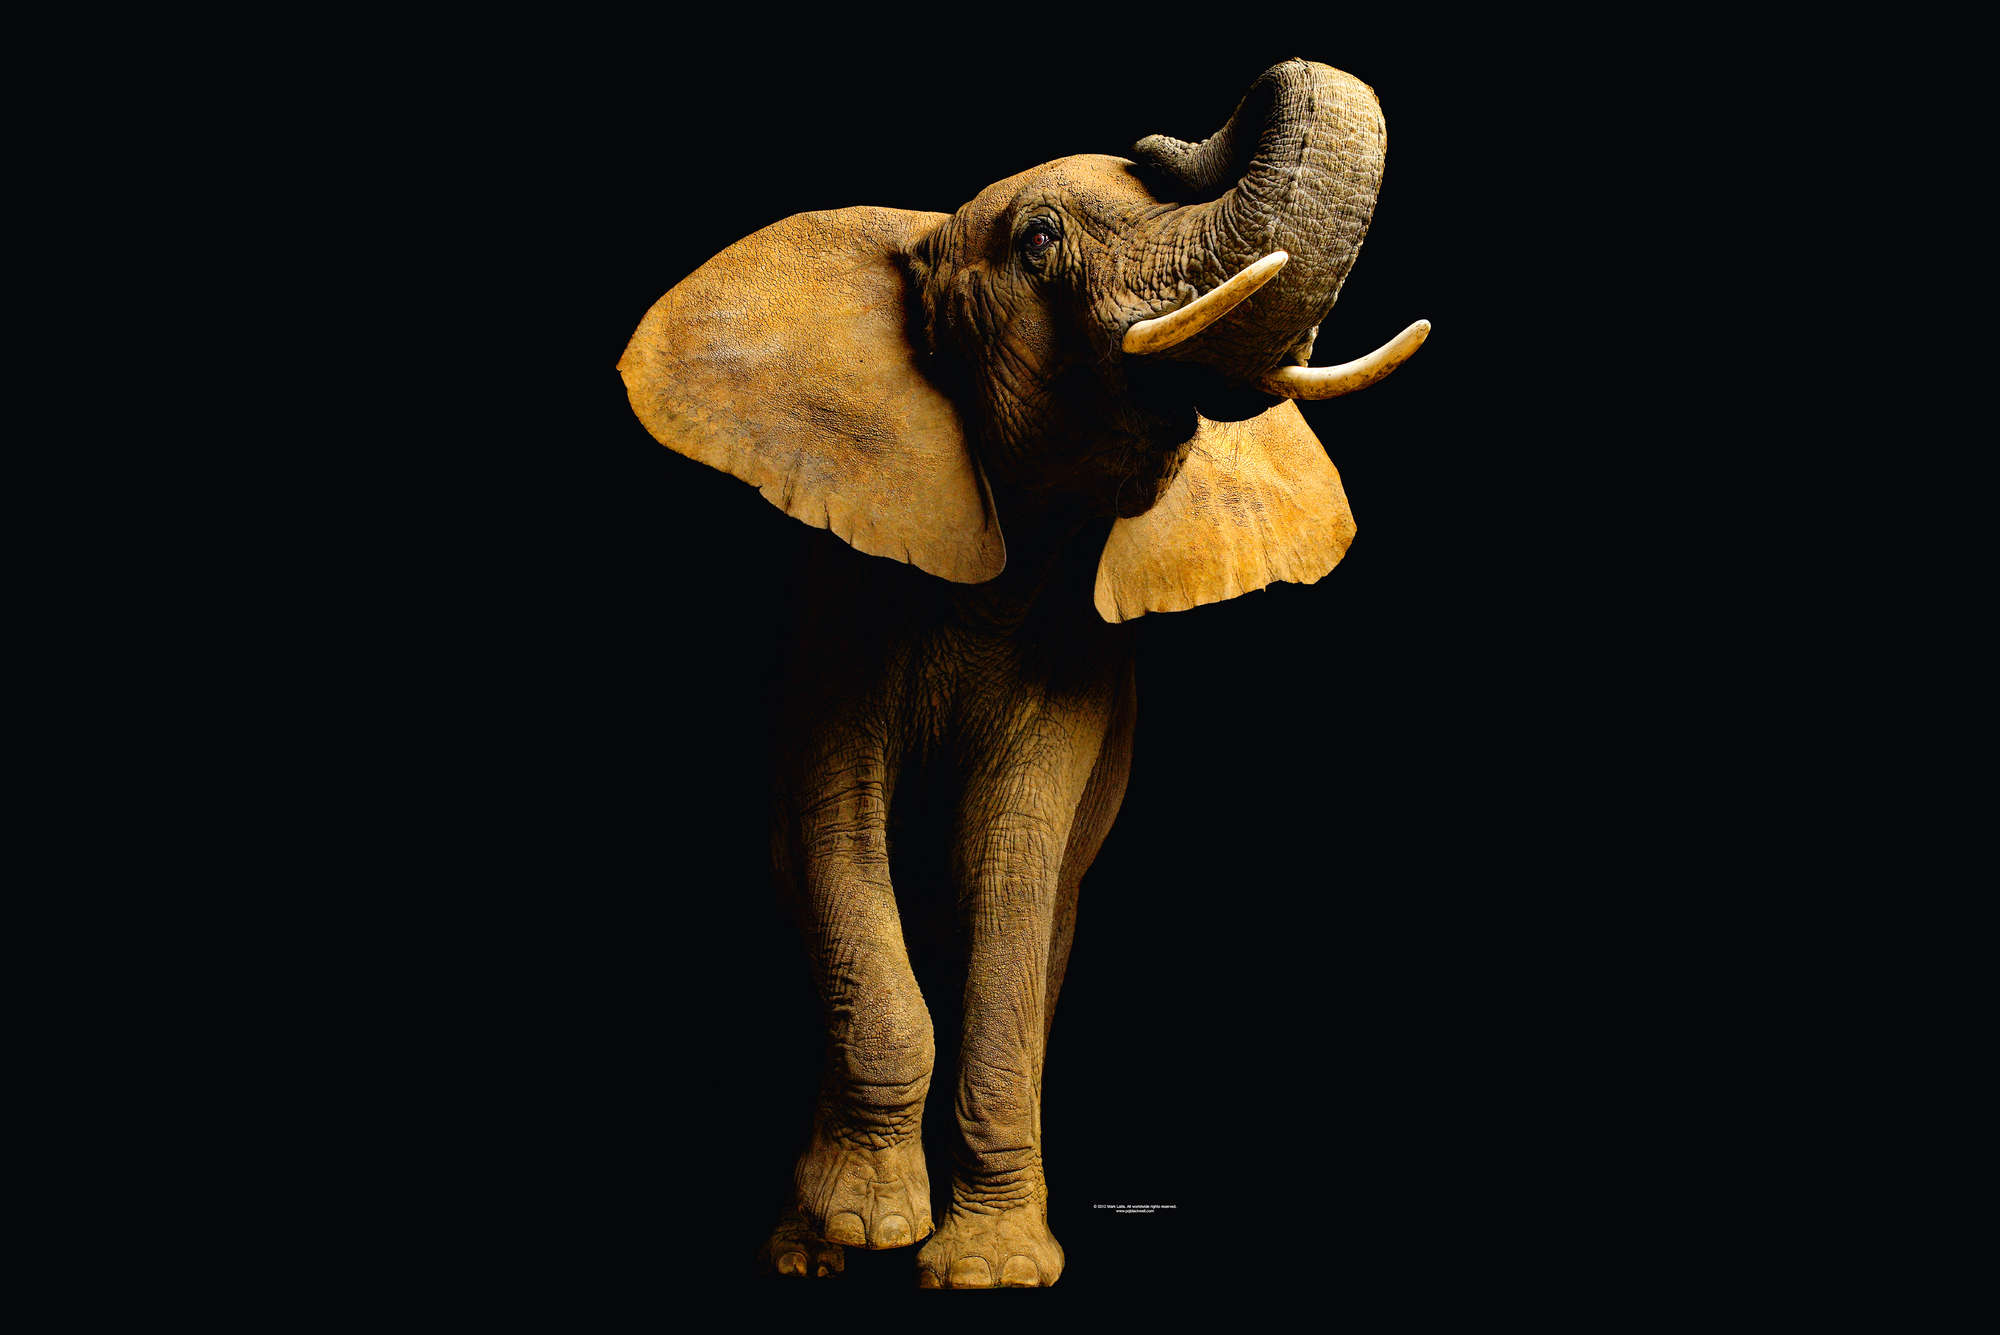             Elefant – Fototapete mit Tier-Portrait
        